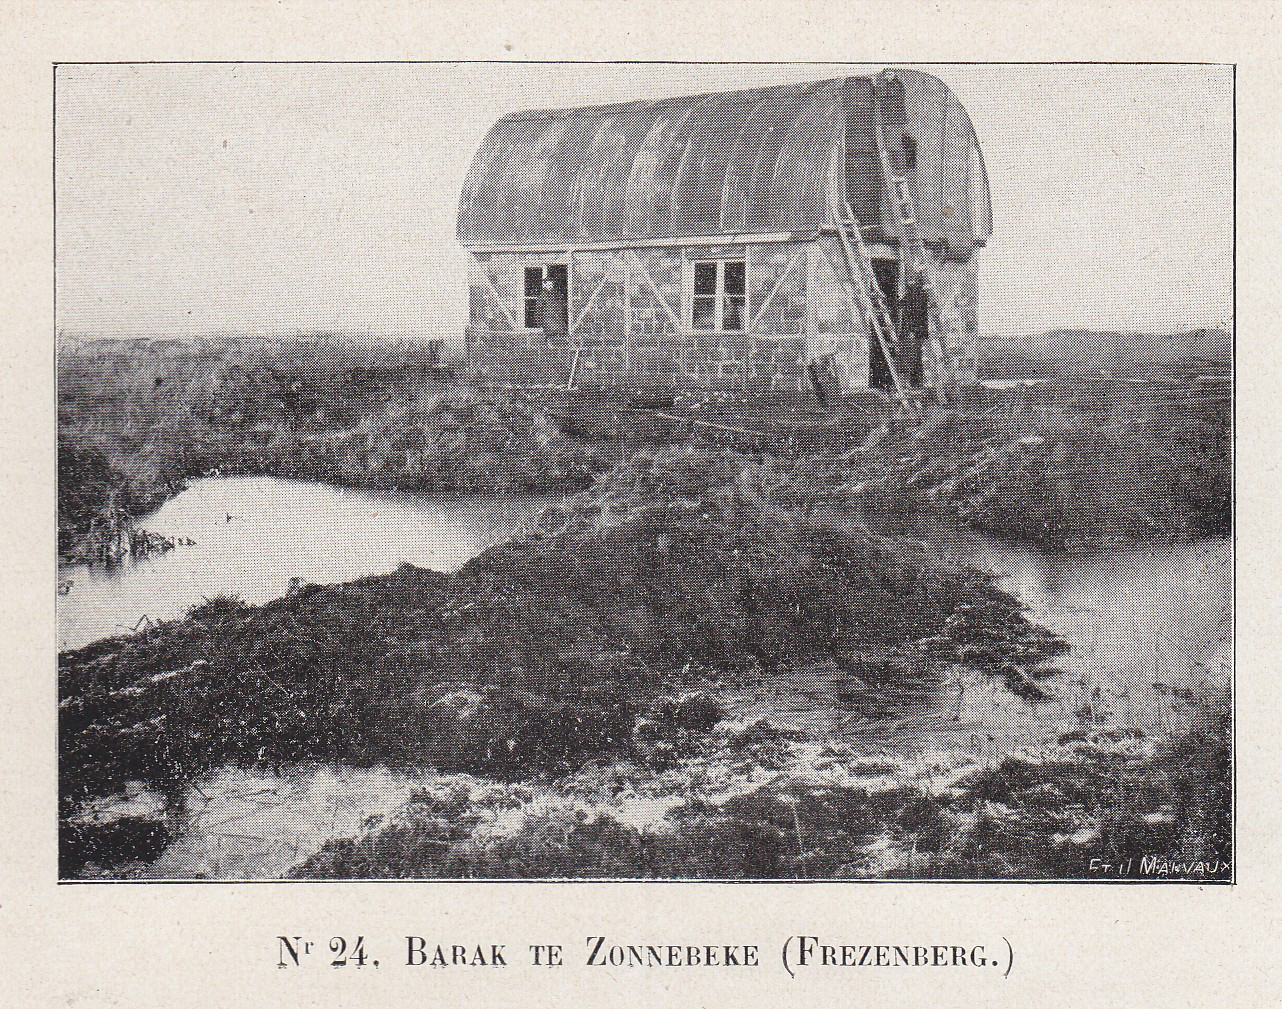 Une cabane Nissen fait office de toiture à Zonnebeke. Photo : Etablissements Jean Malvaux S.A. Source : Gilot (1921 : fig. 24).